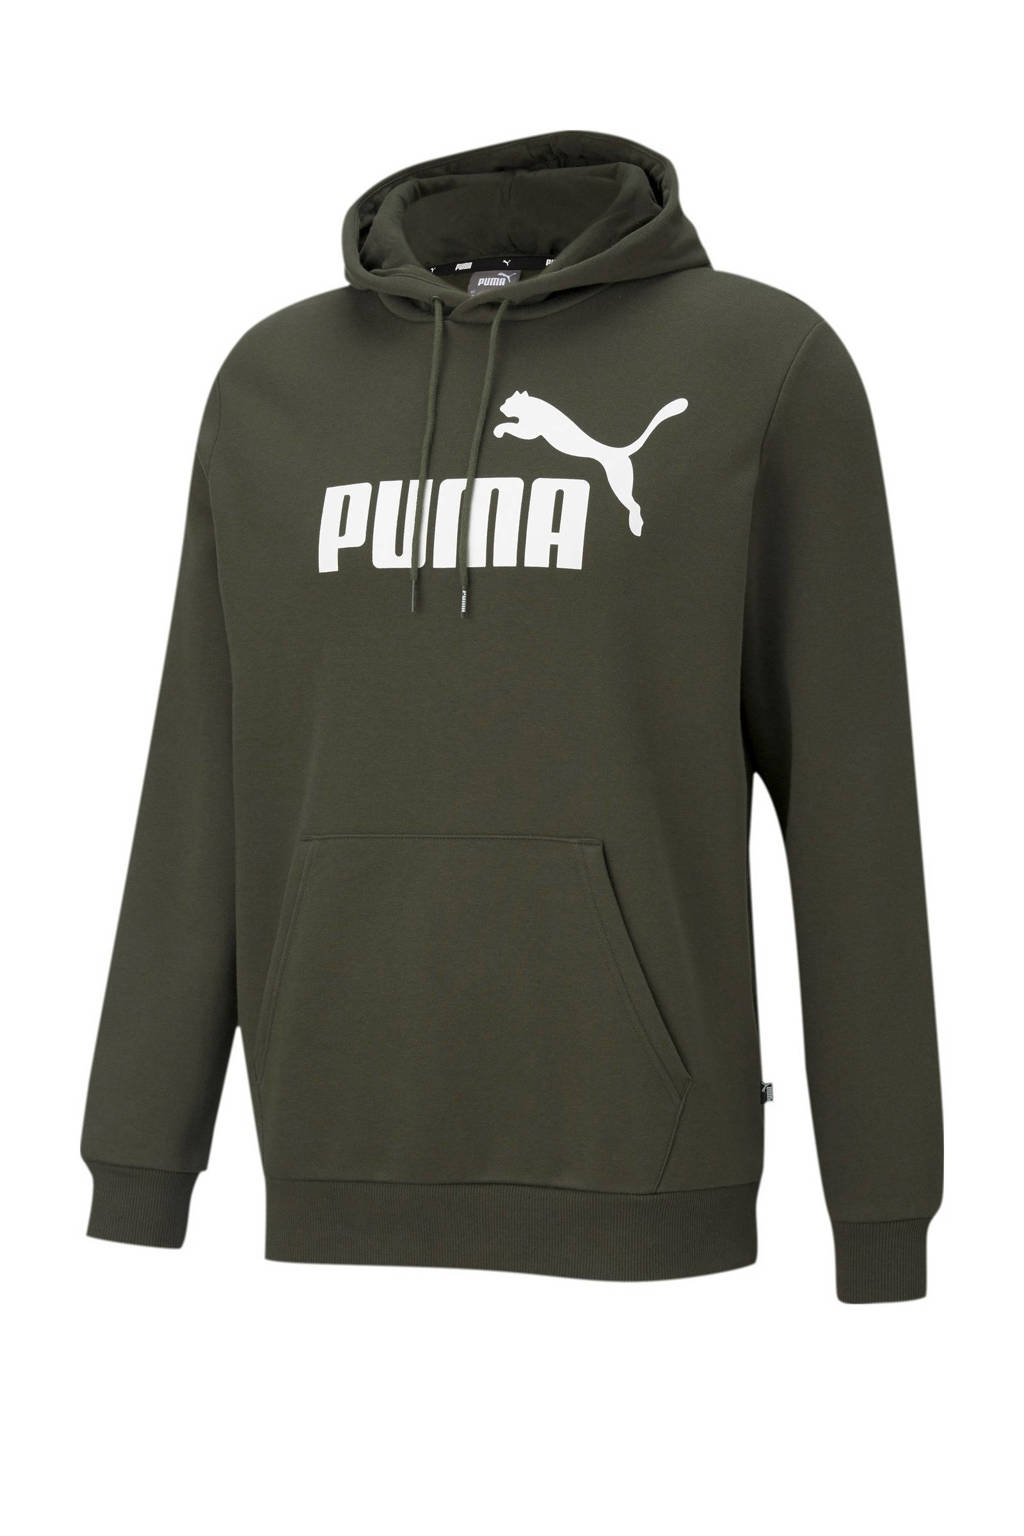 Puma hoodie donkergroen, Donkergroen